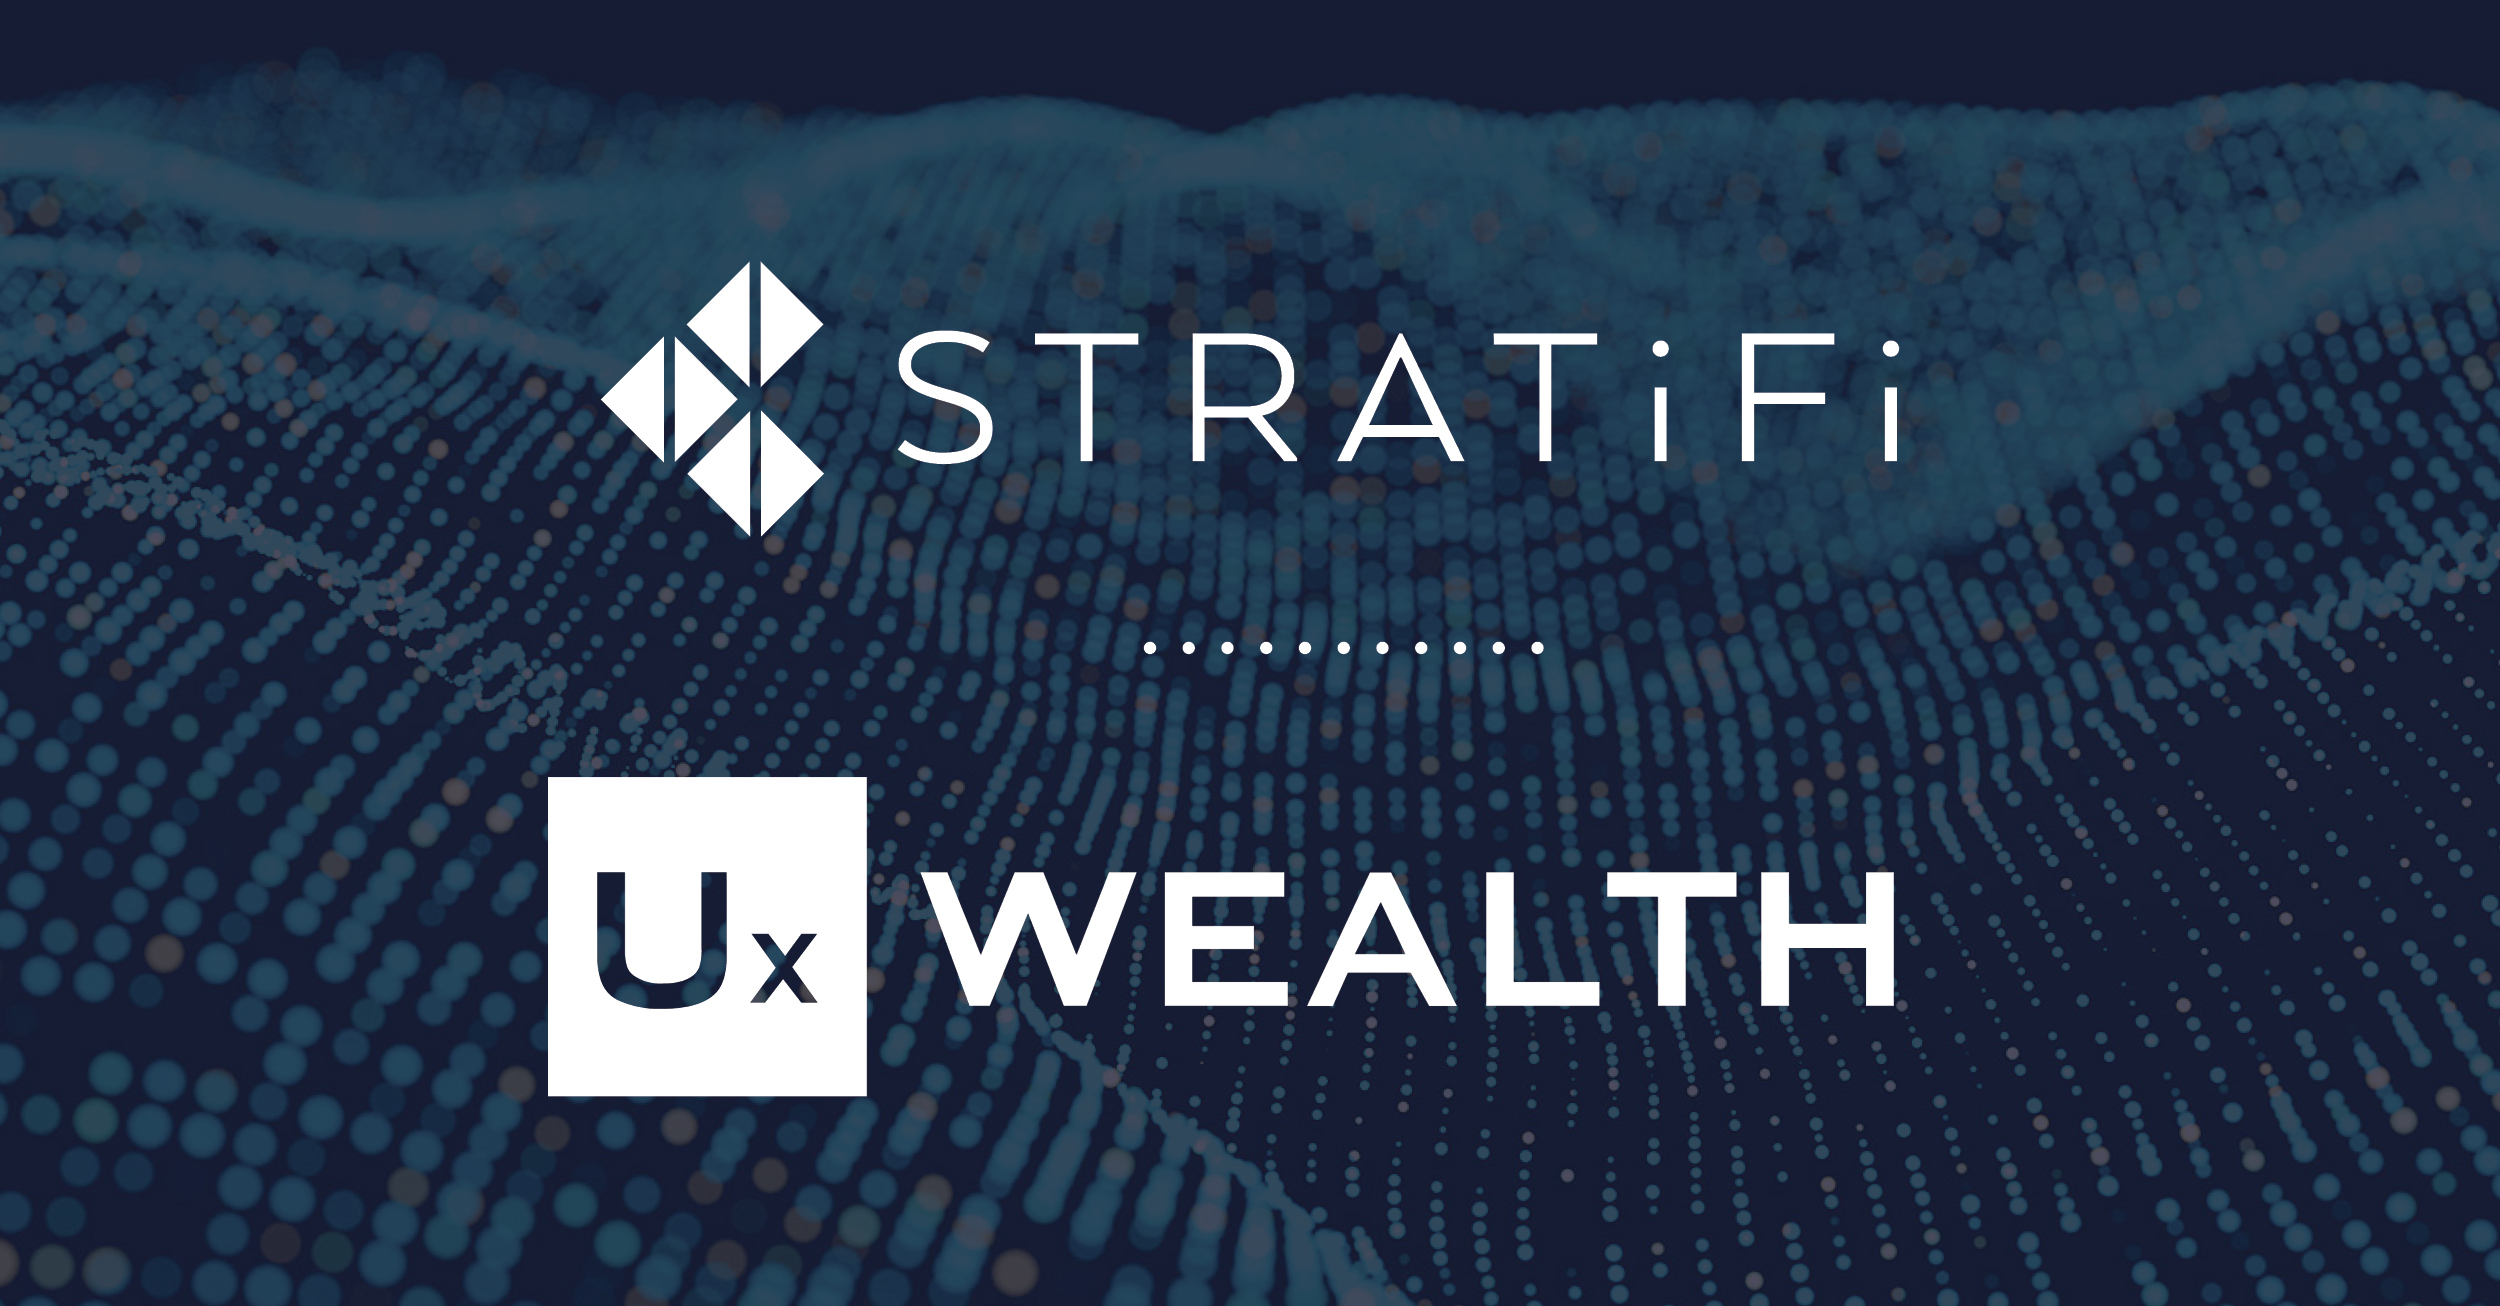 UX-Wealth-Partners-StratiFi